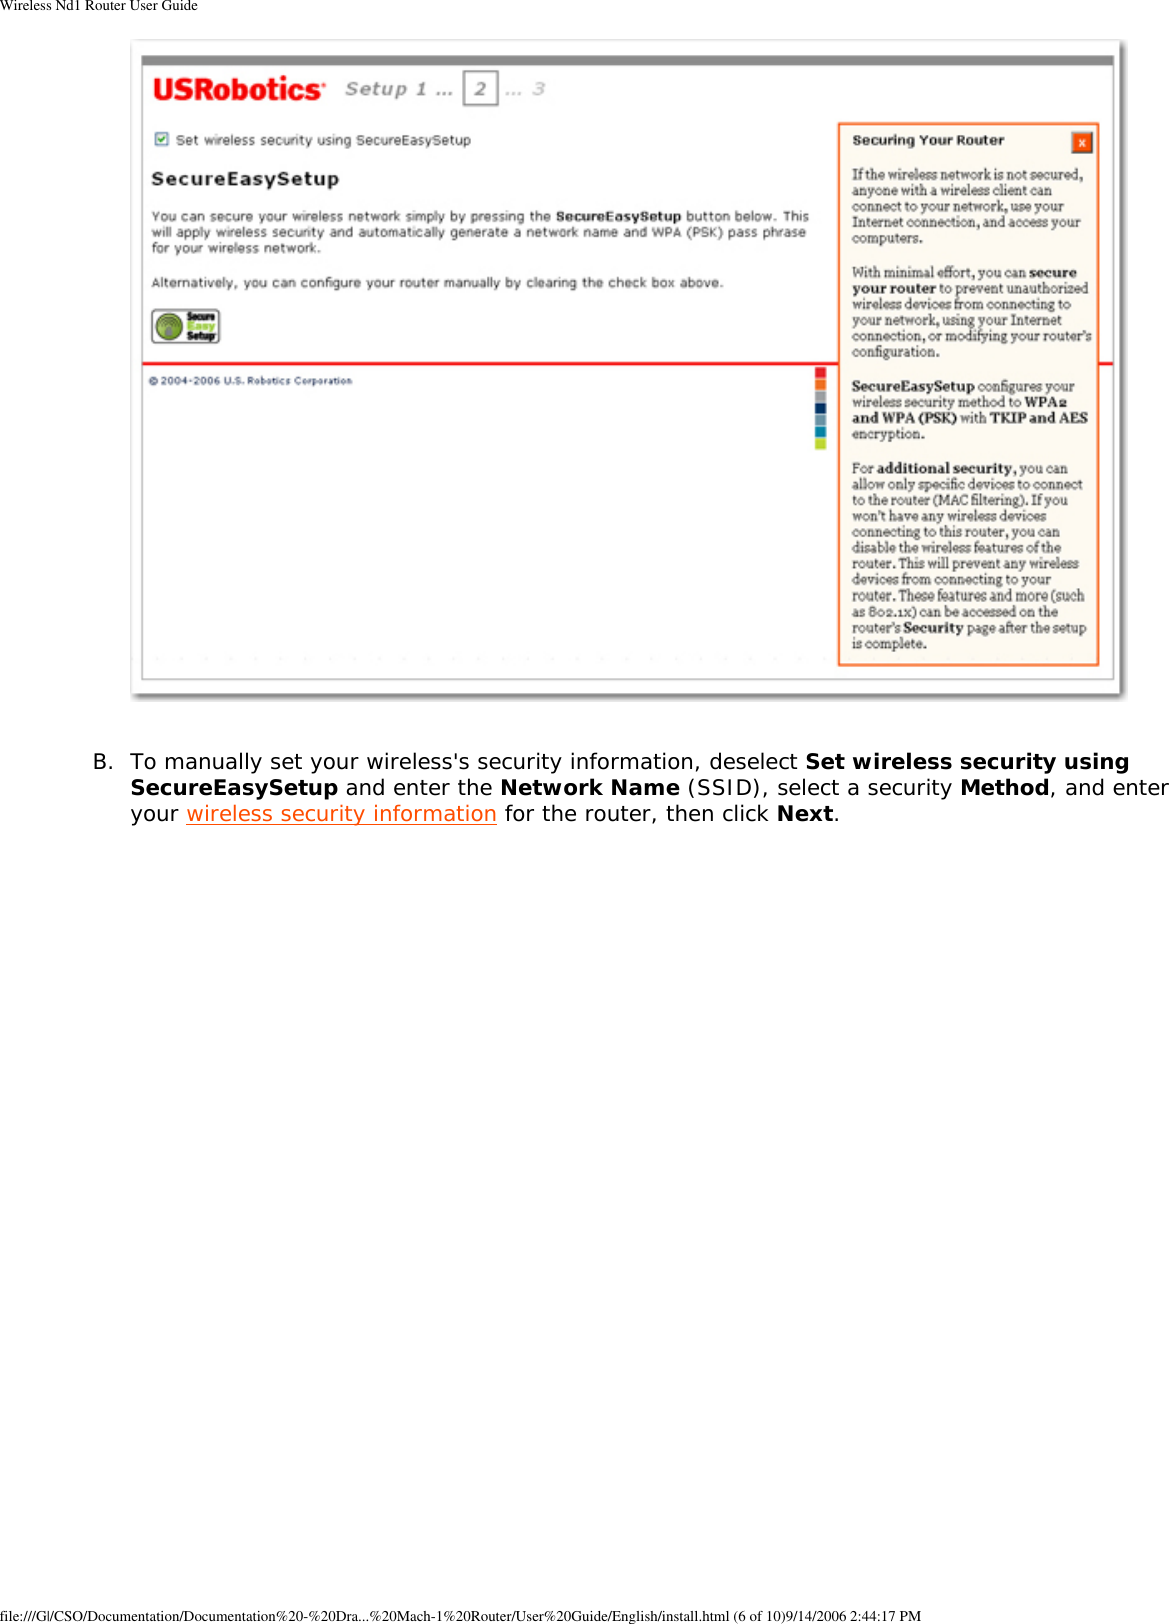 Page 13 of GemTek Technology R950630GN USRobotics Wireless Nd1 Router User Manual Wireless Nd1 Router User Guide